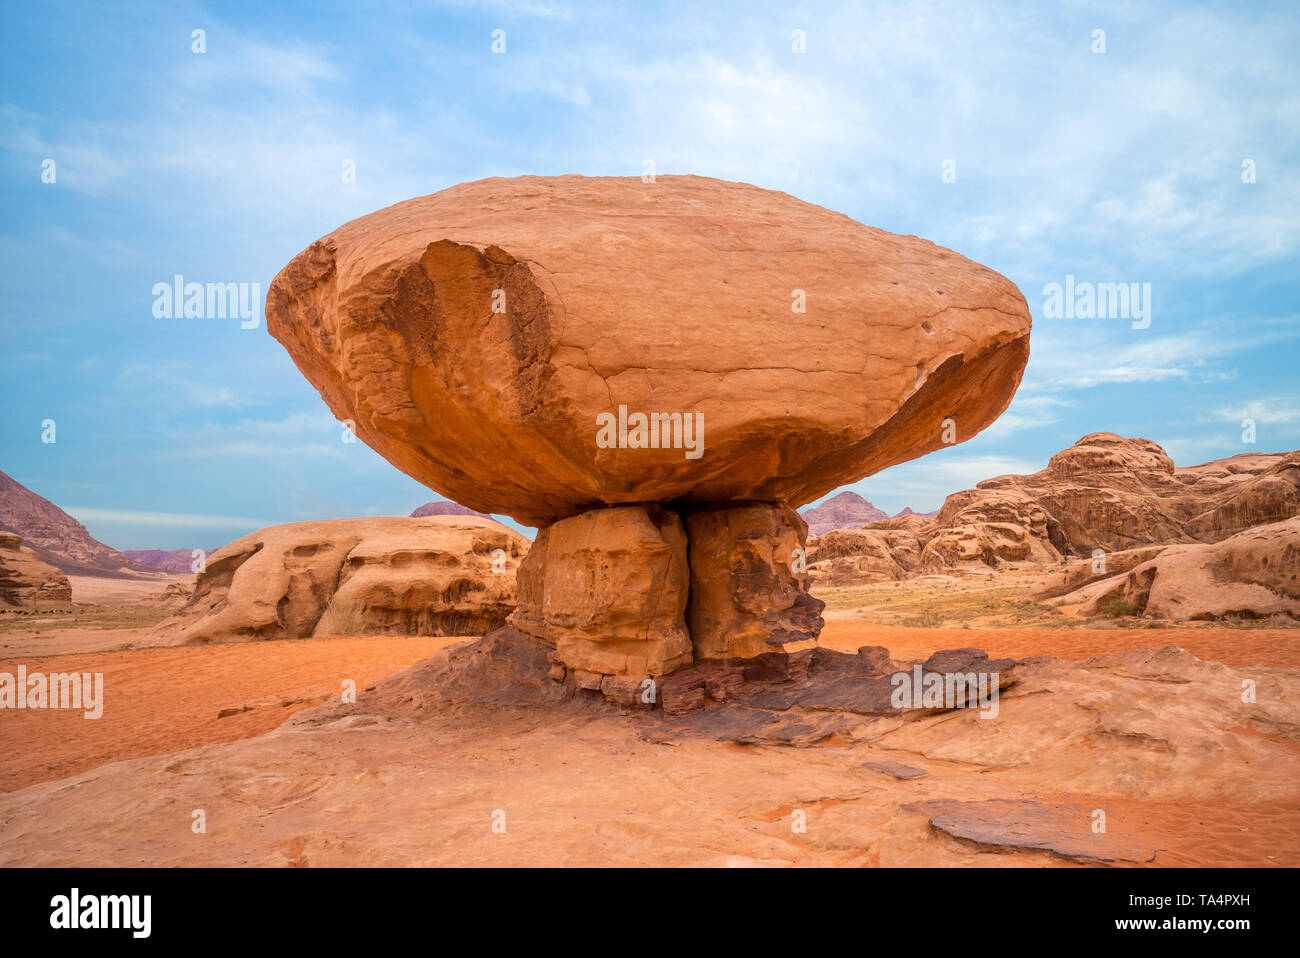 mushroom rock in Wadi Rum desert, Jordan Stock Photo